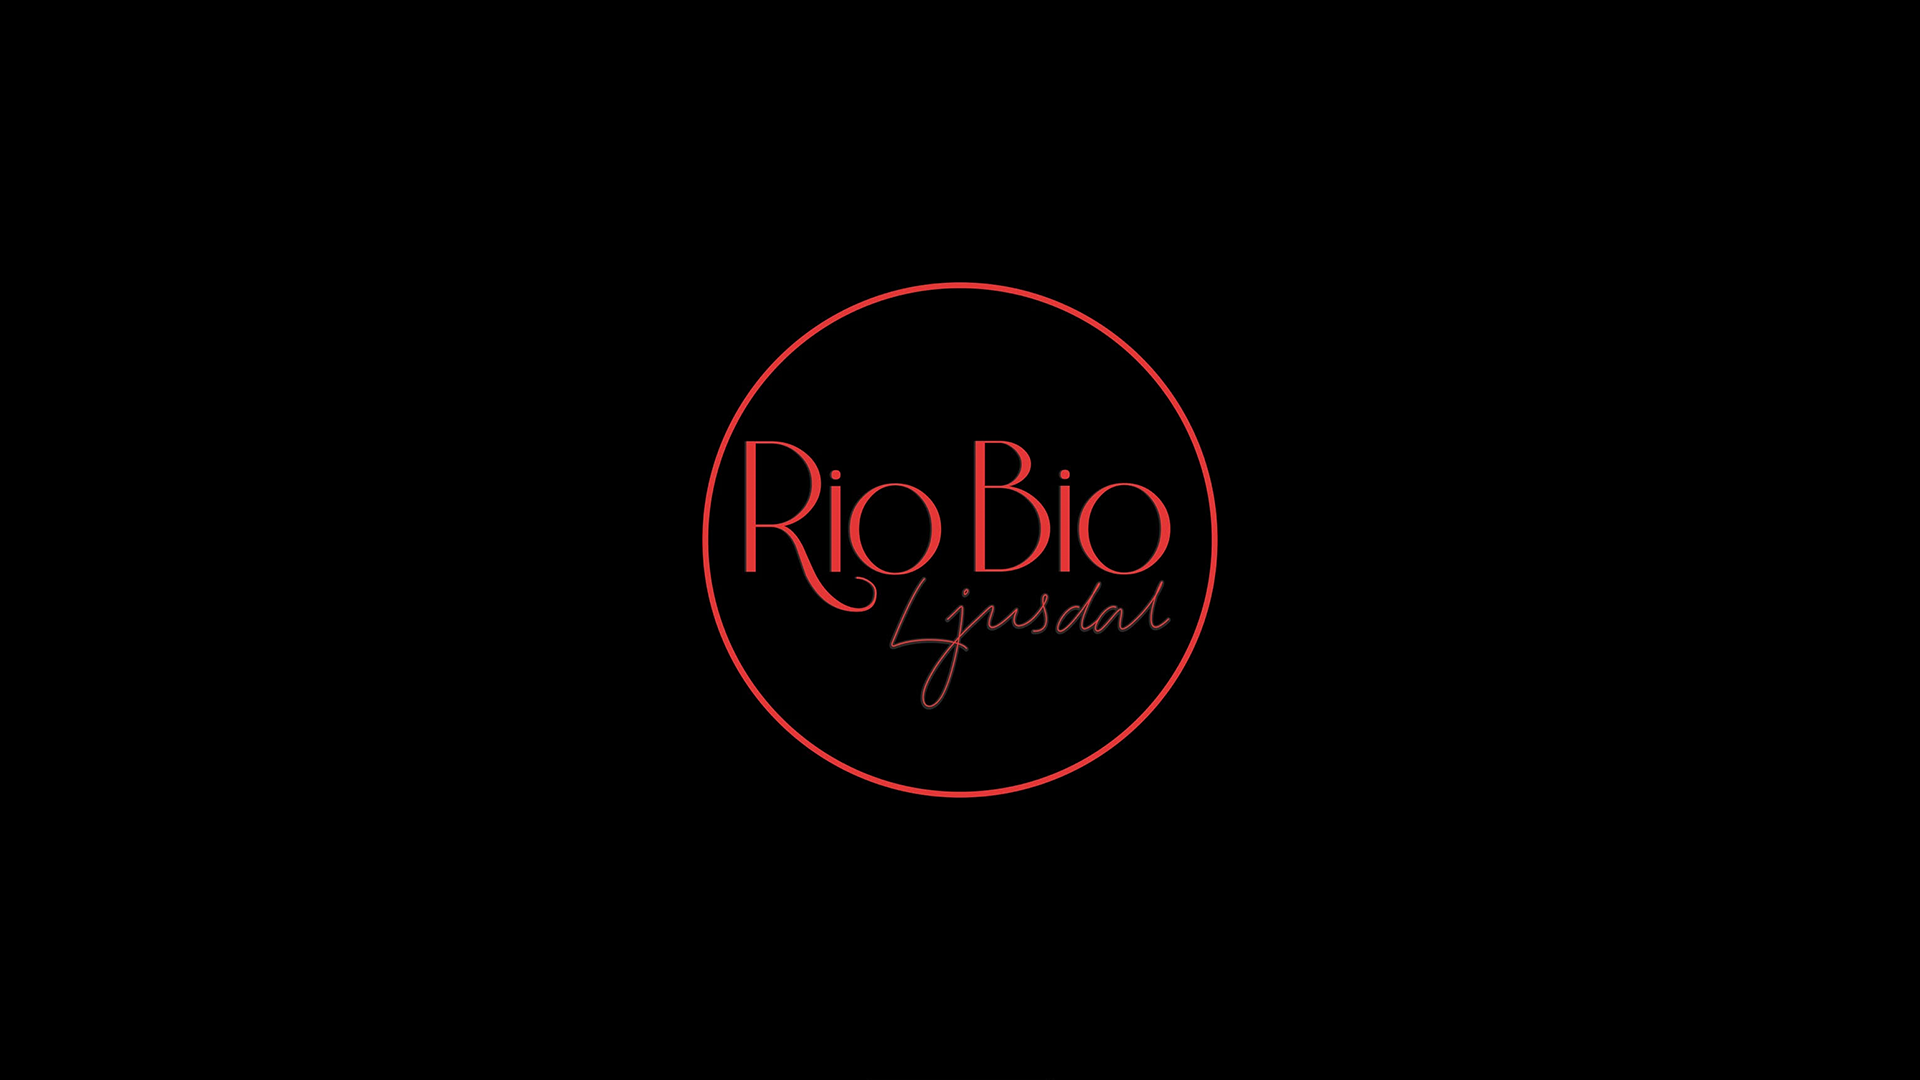 Rio Bio